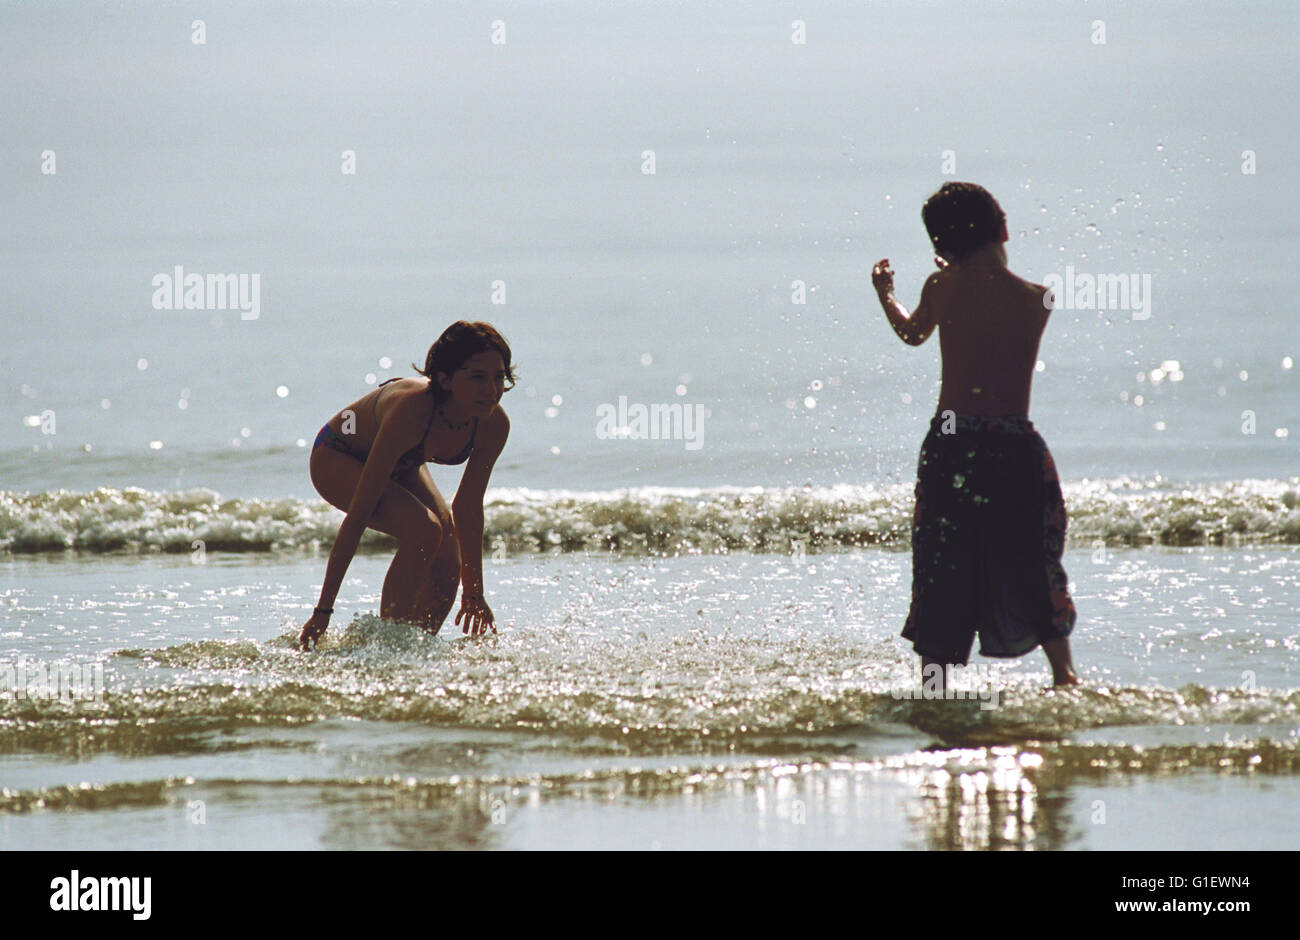 Eine mano voll Gras, Deutschland/Iran 2000, Regie: Roland Suso Richter, Szenenfoto Foto Stock